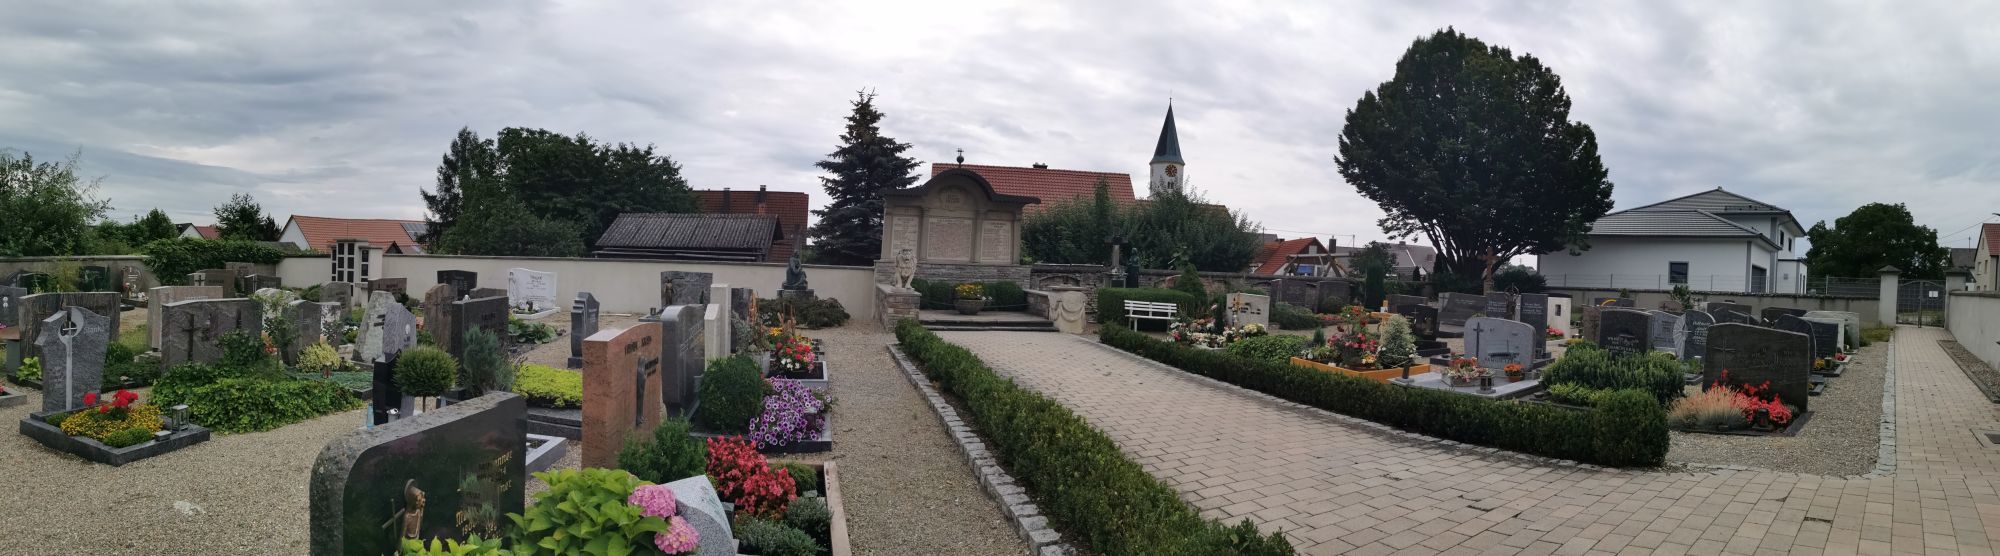 Friedhof Rettenbach